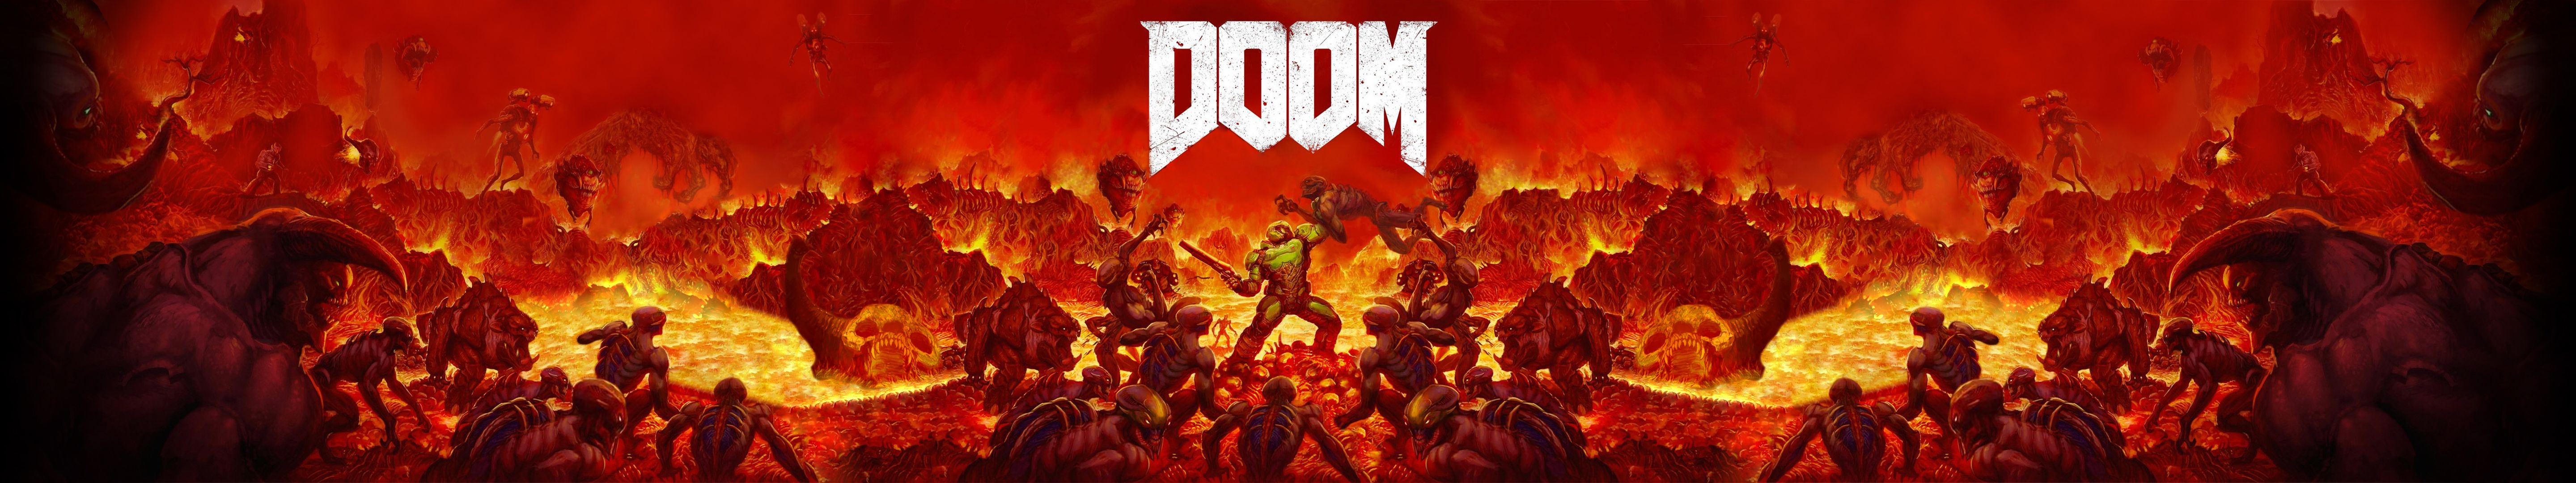 Doom 4k Wallpaper Top Background